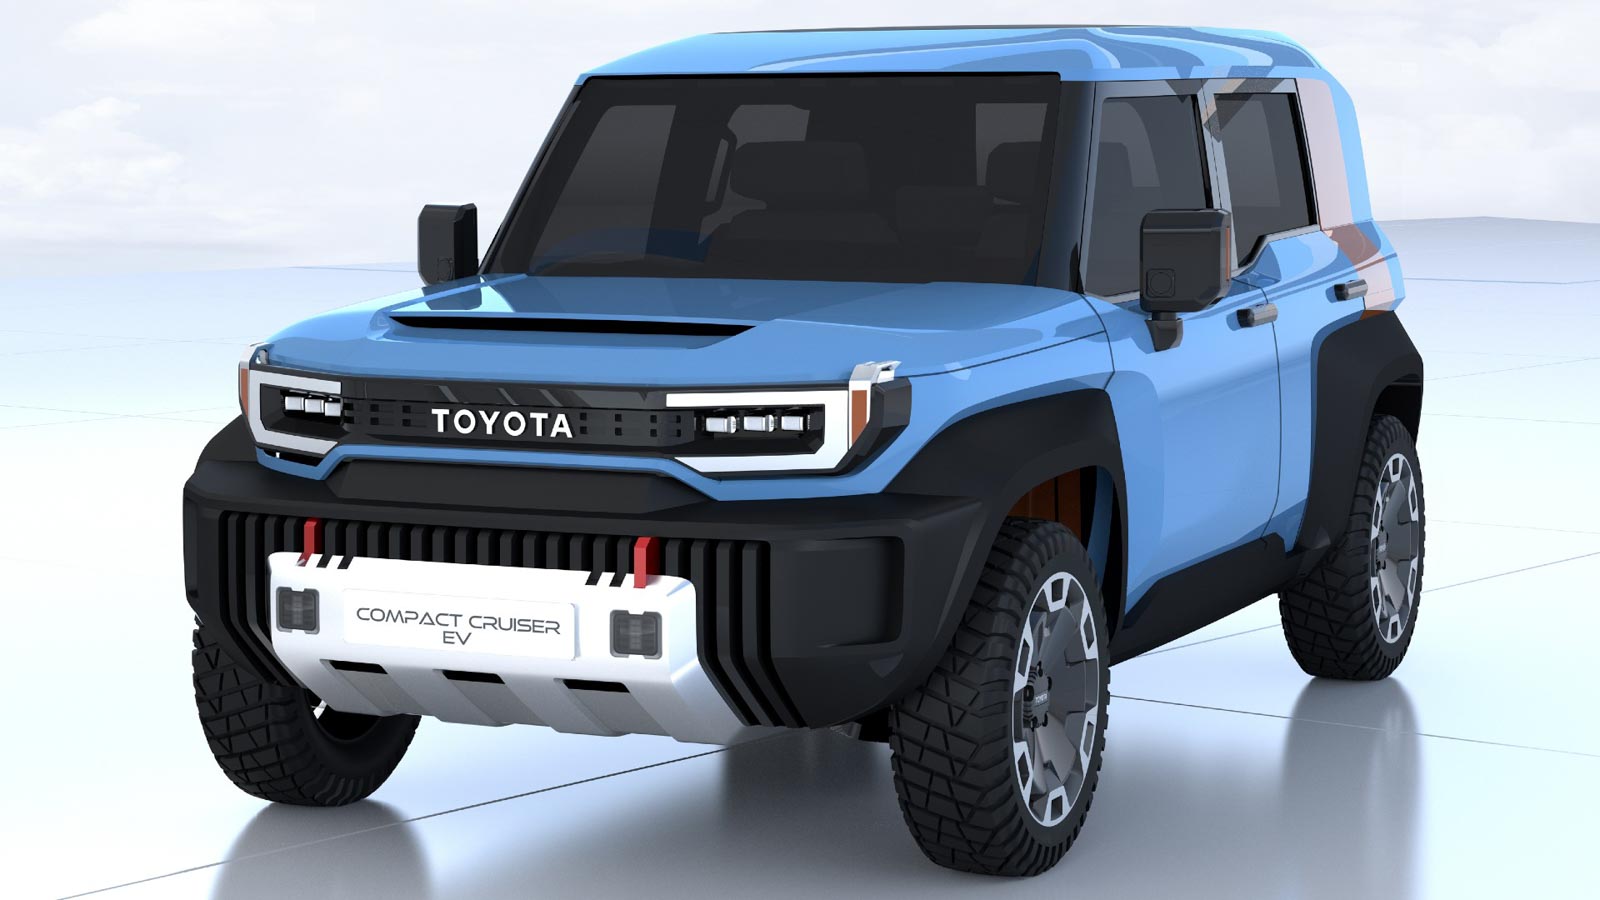 Toyota-Compact-Cruiser-EV-Concept_.jpg